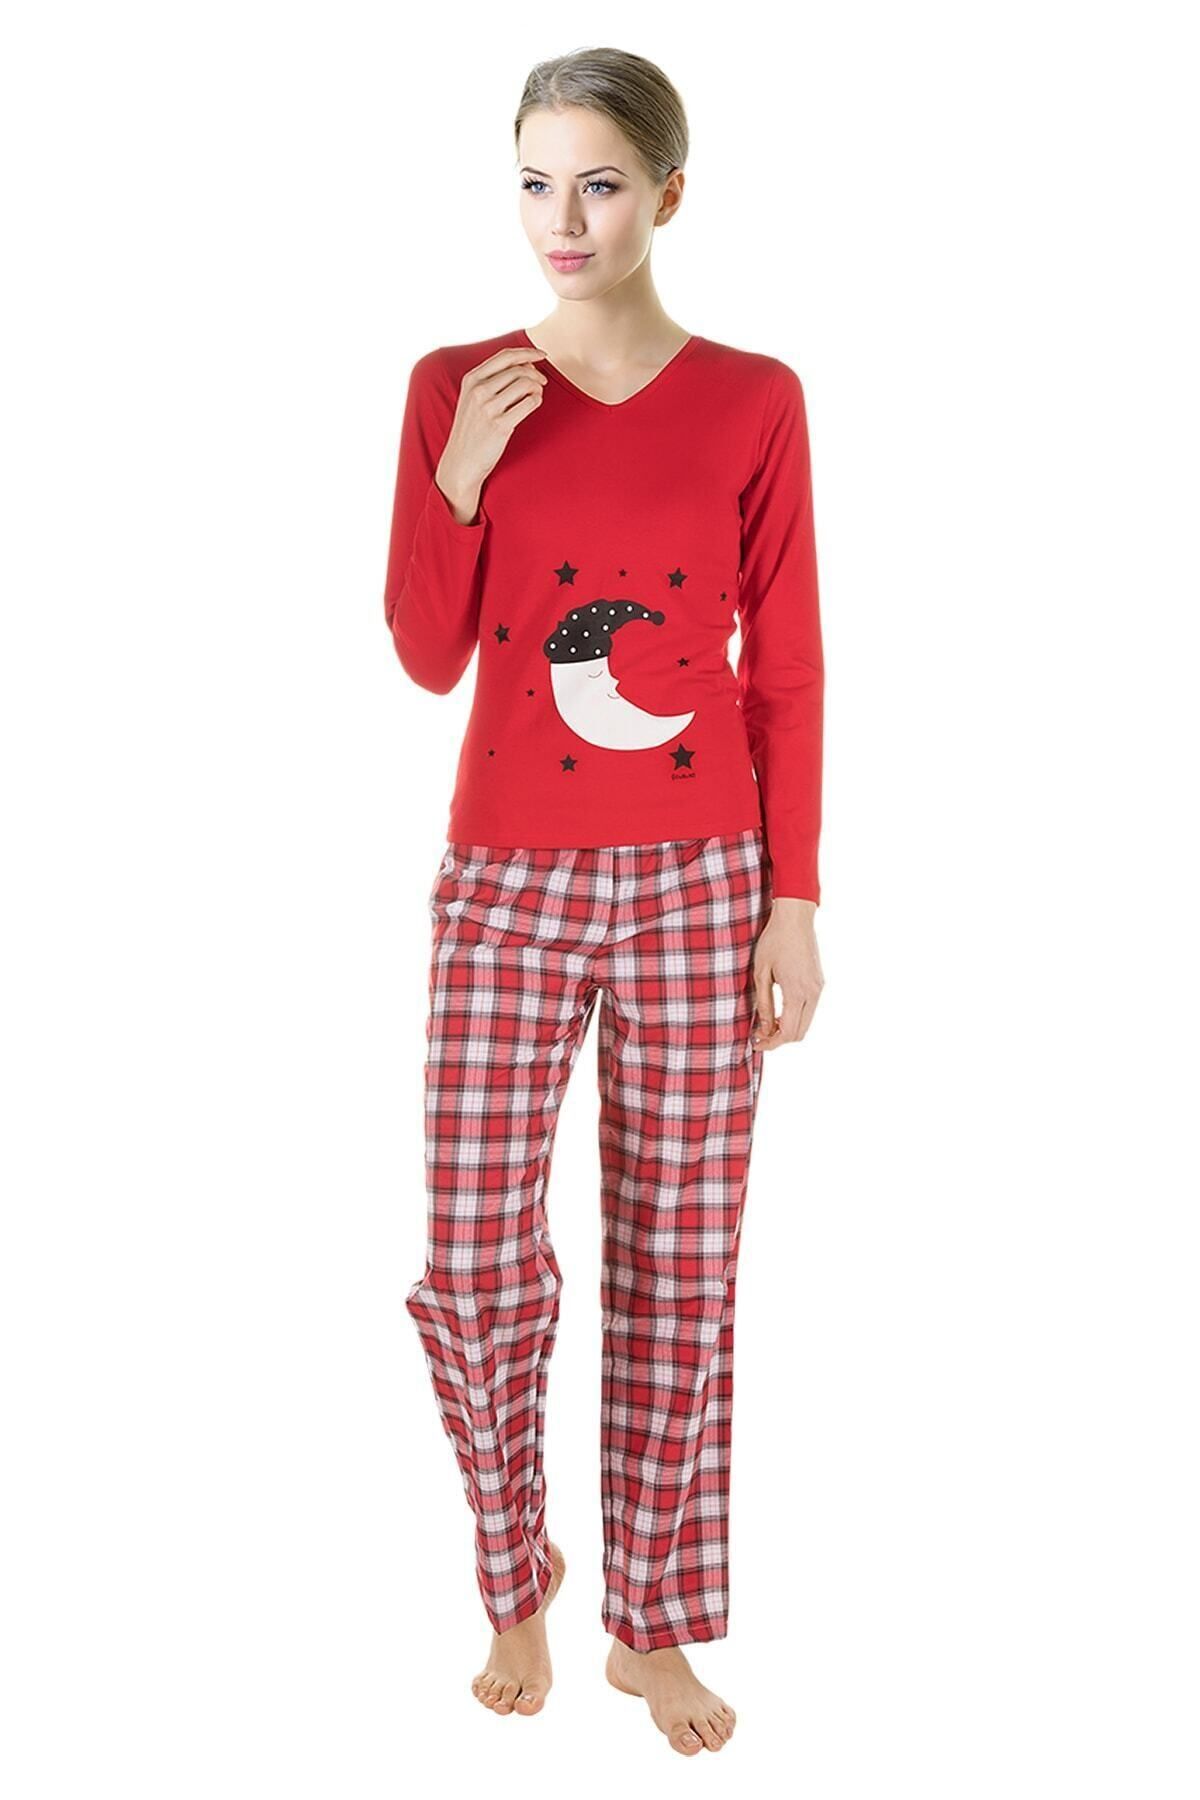 DoReMi Kadın Kırmızı Pijama Takımı